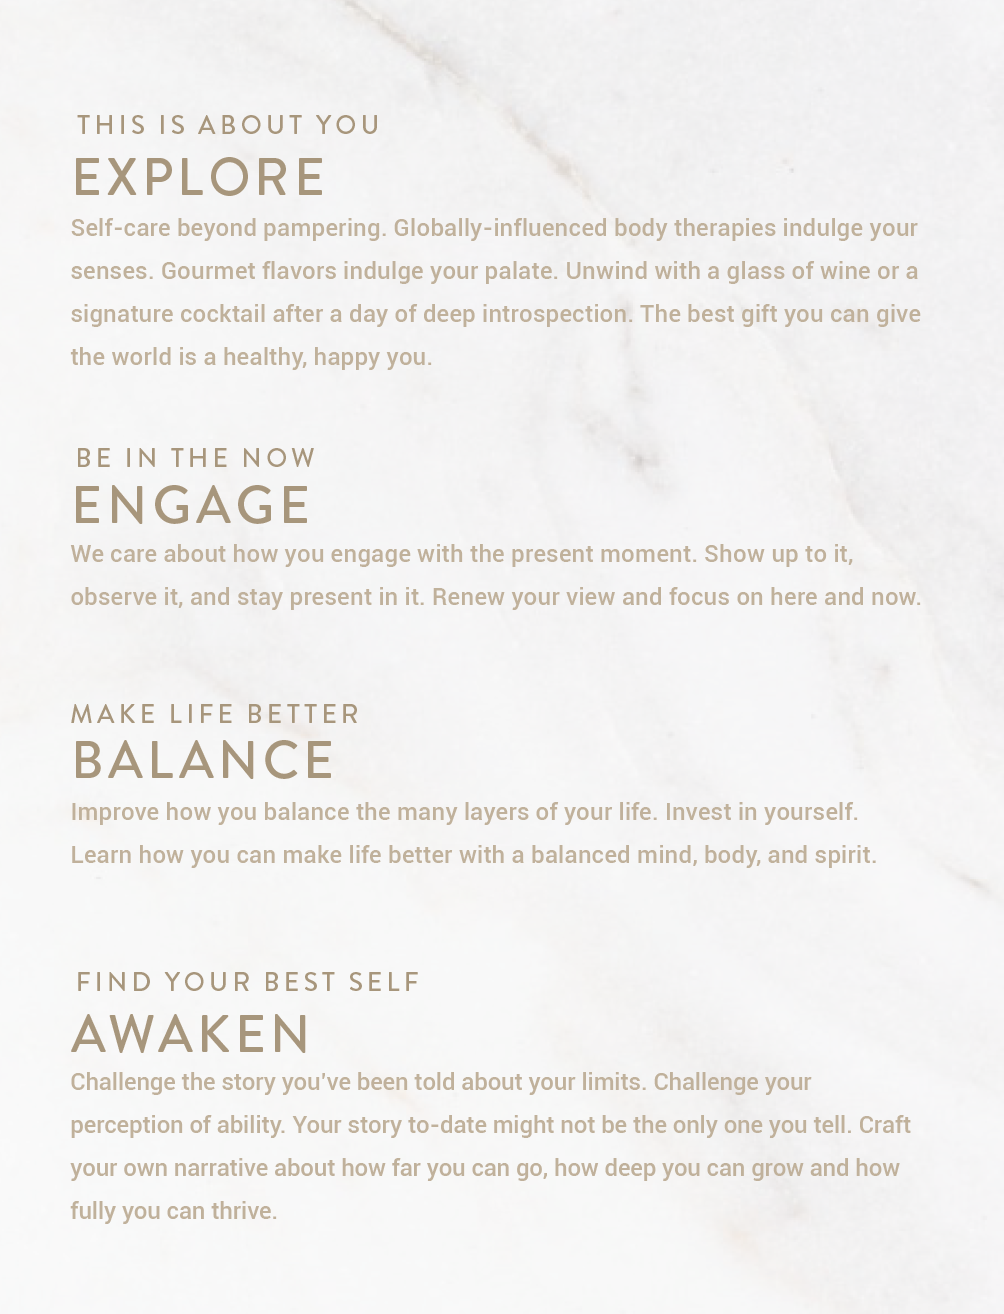 explore engage balance awaken